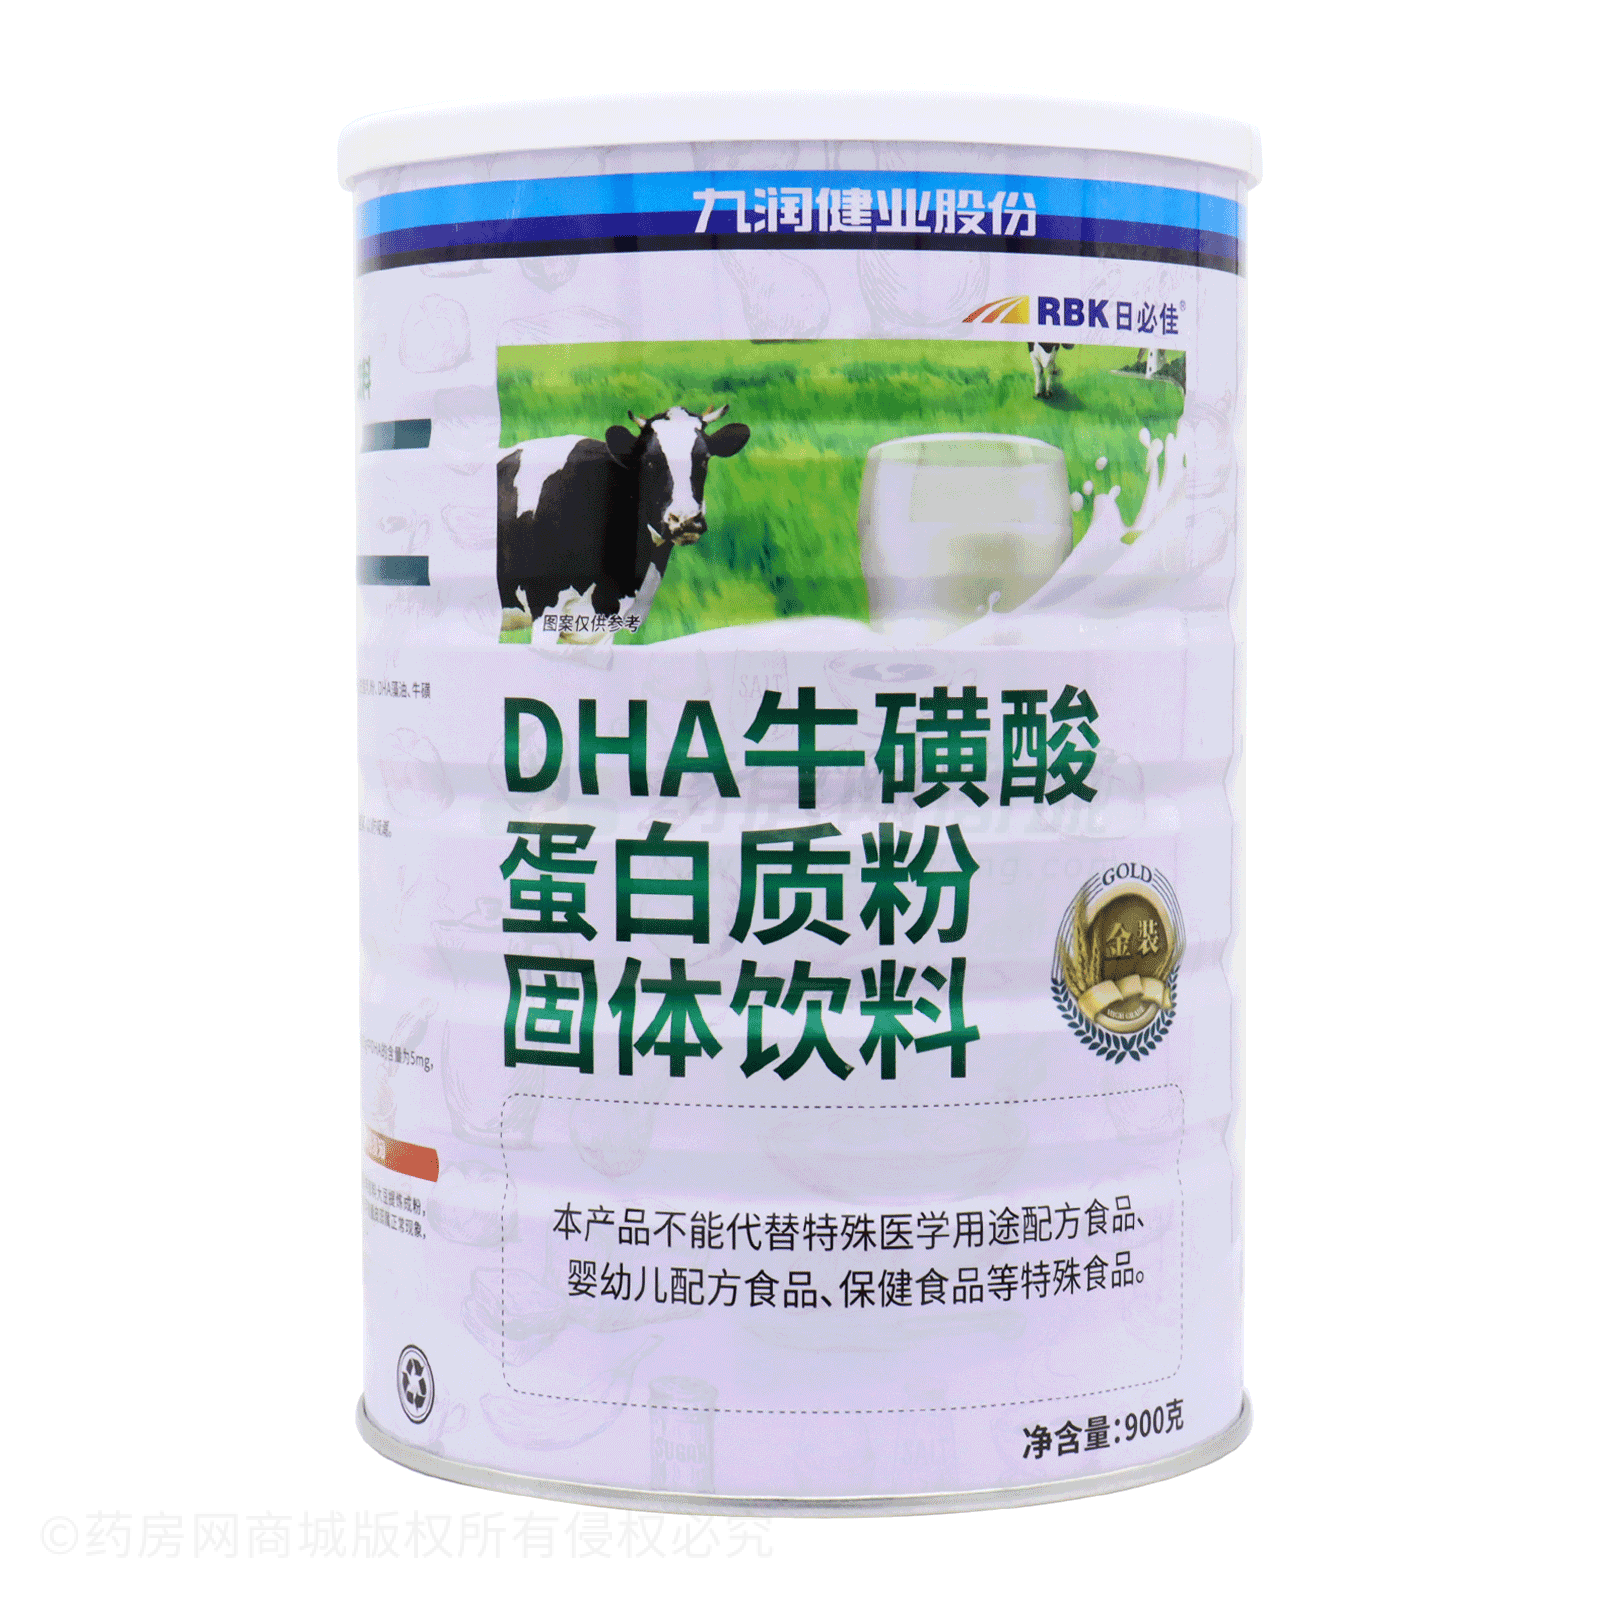 DHA牛磺酸蛋白质粉固体饮料